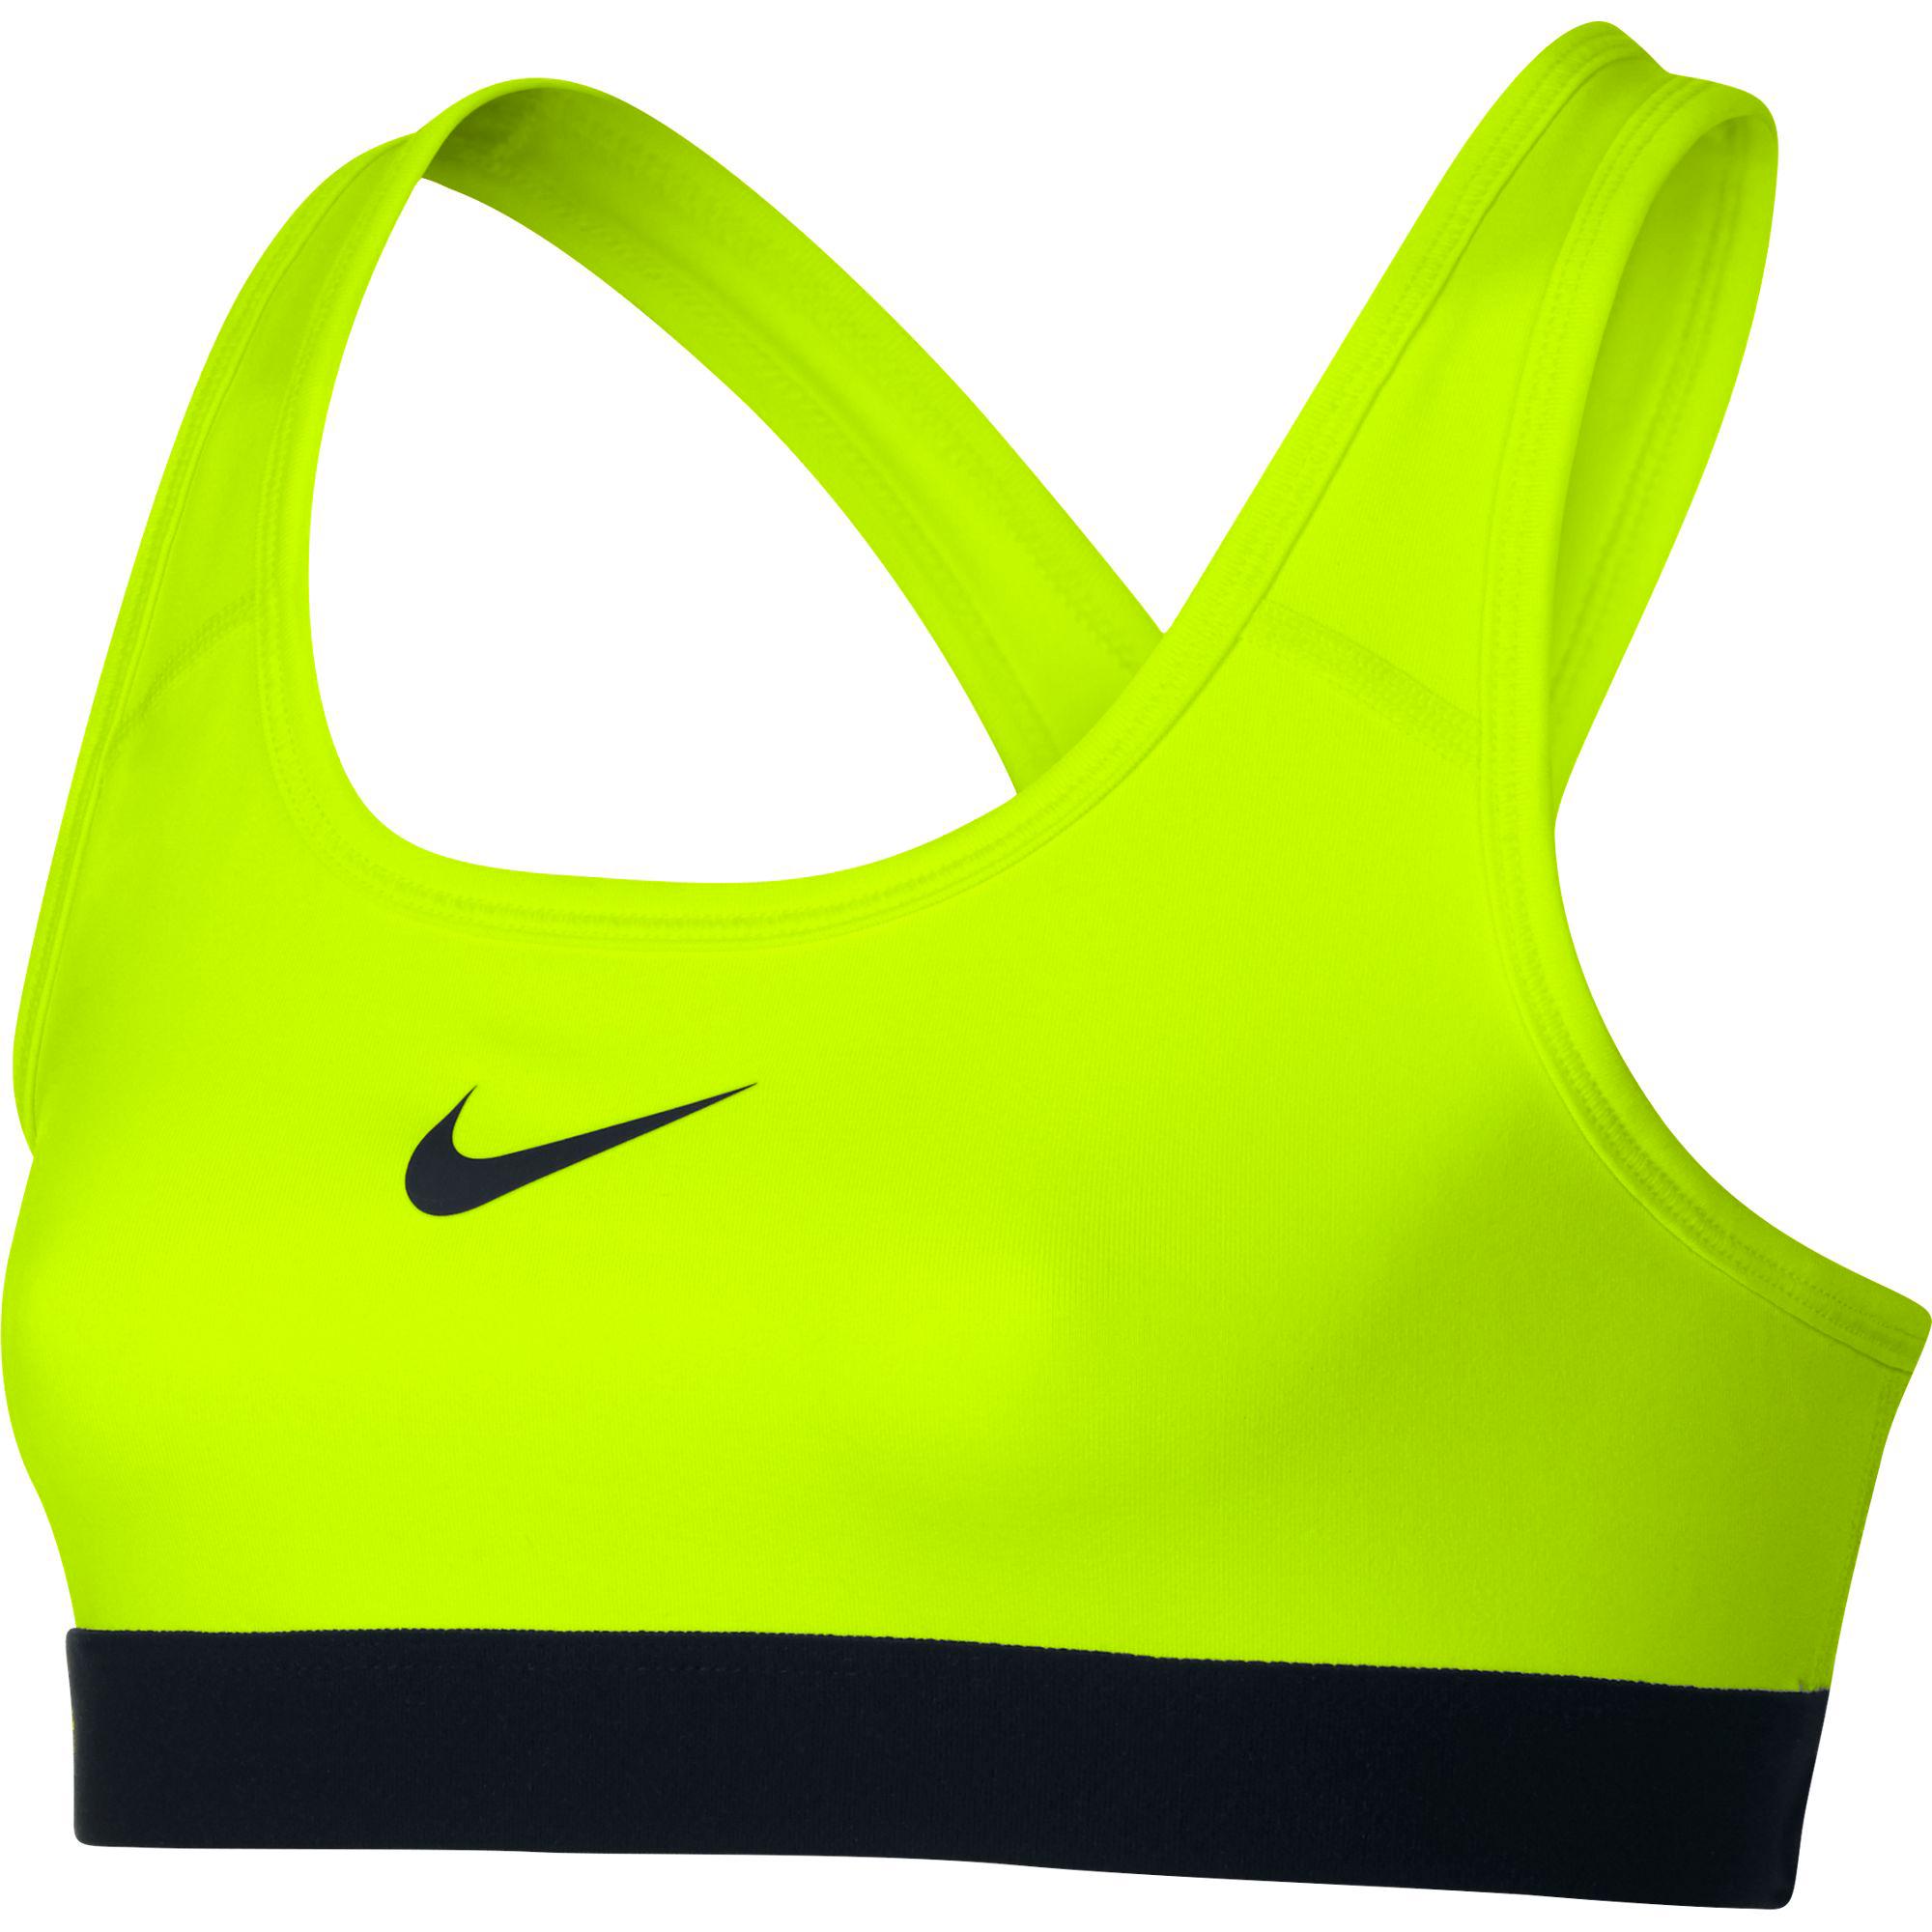 Nike Girls Pro Sports Bra - Volt/Black - Tennisnuts.com